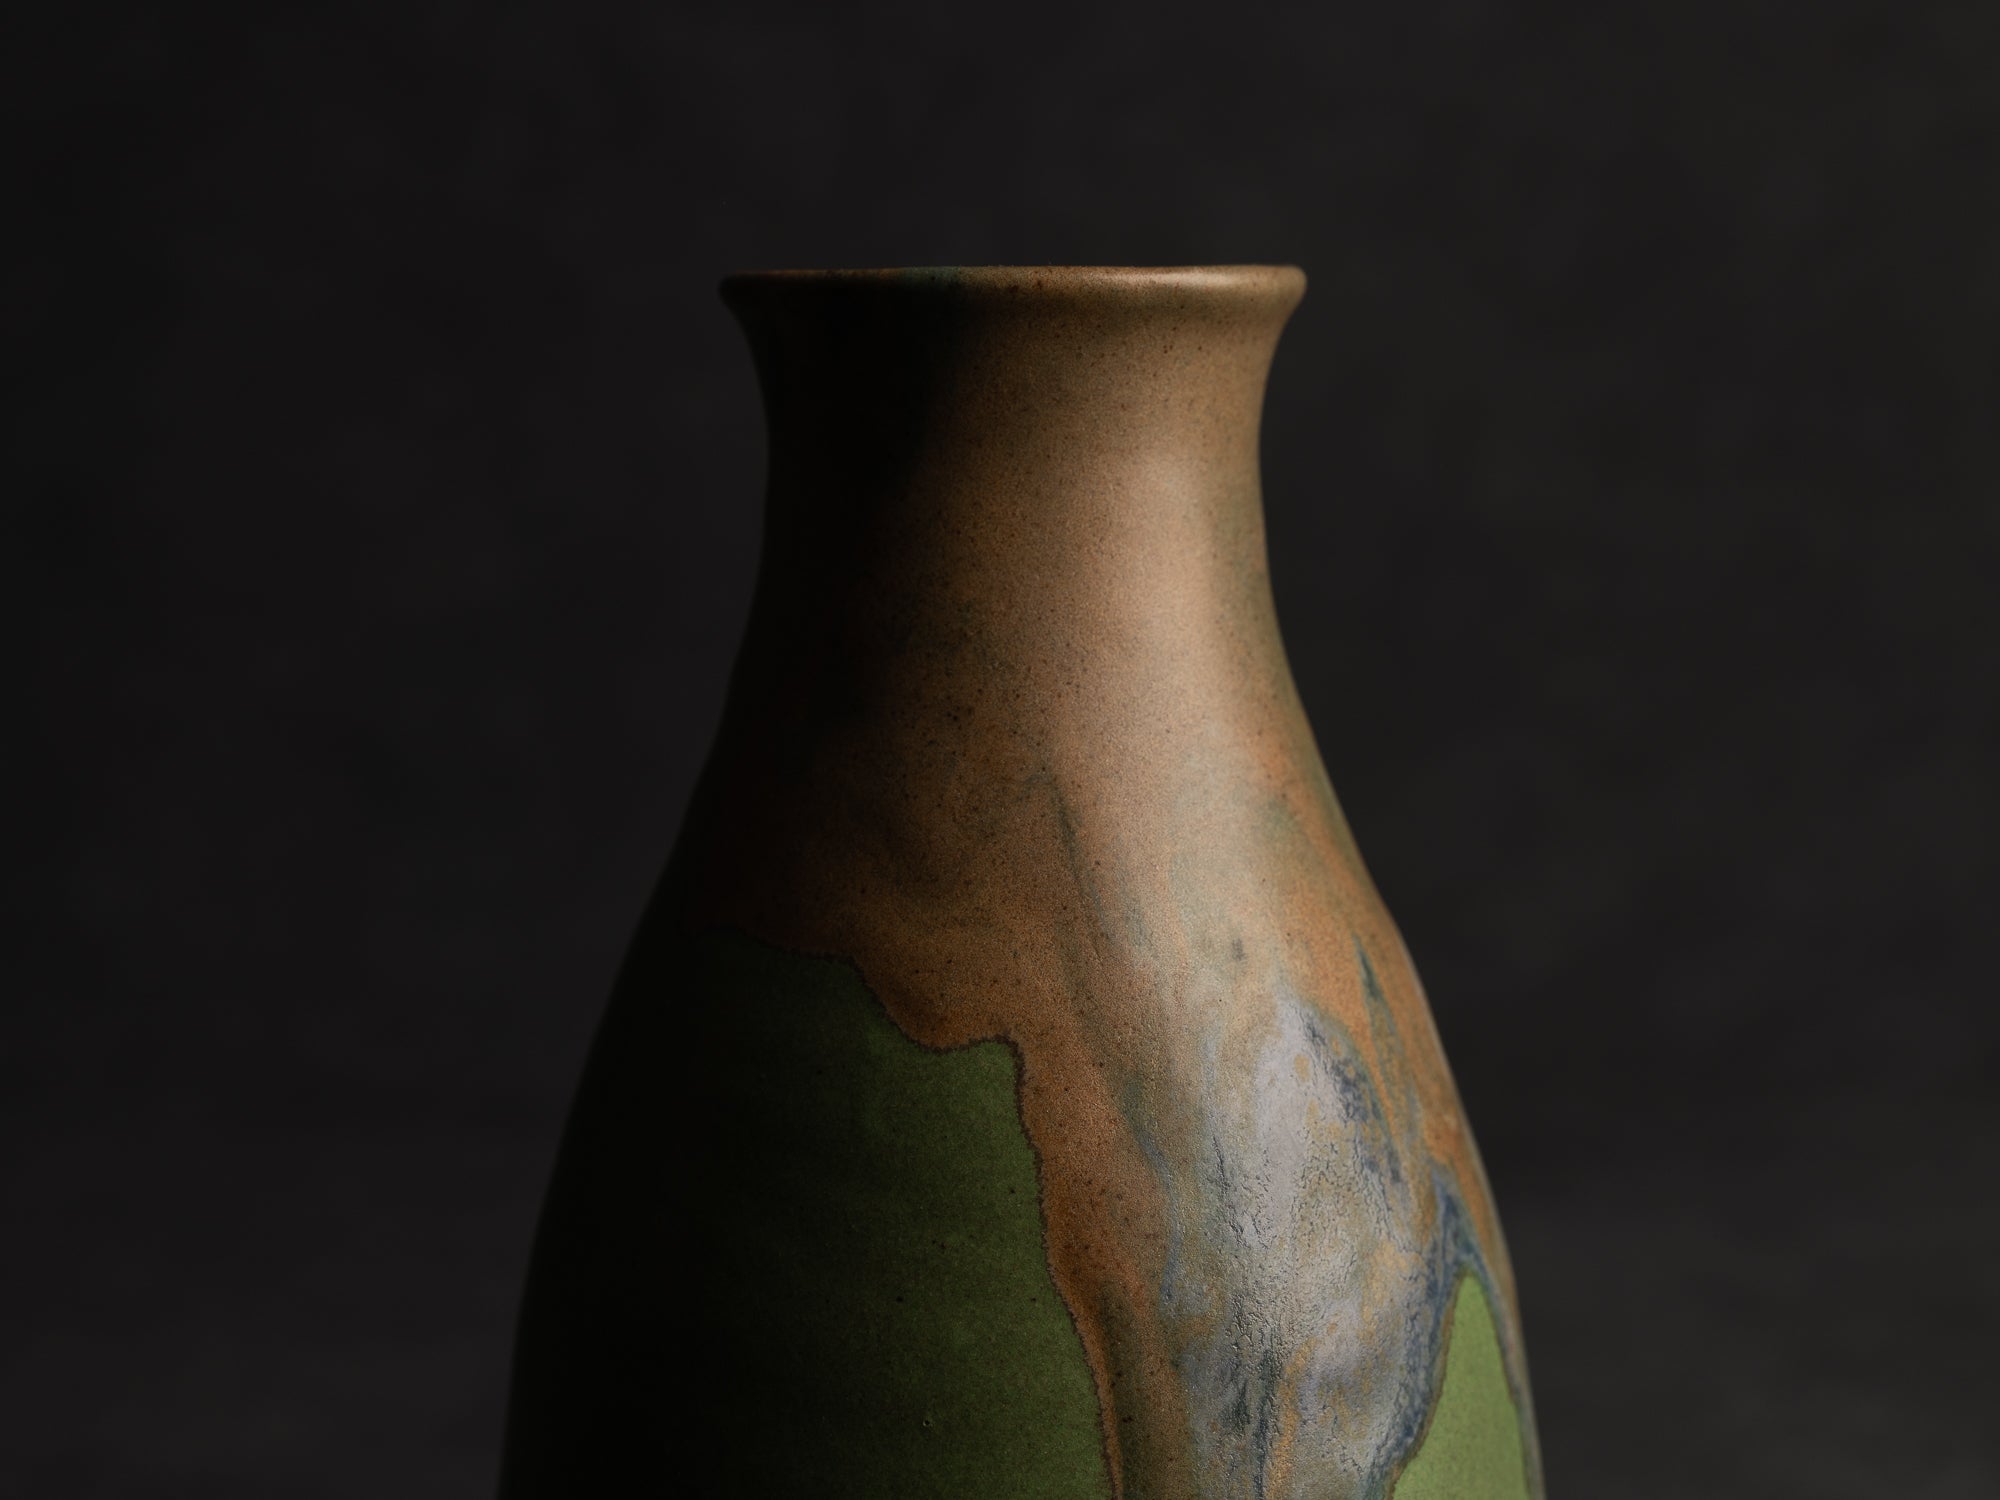 Vase bouteille en grès de Léon Pointu, Atelier Pointu, France (vers 1910-25)..School of Carriès stoneware bottle vase by Léon Pointu, Atelier Pointu, France (circa 1910-25)